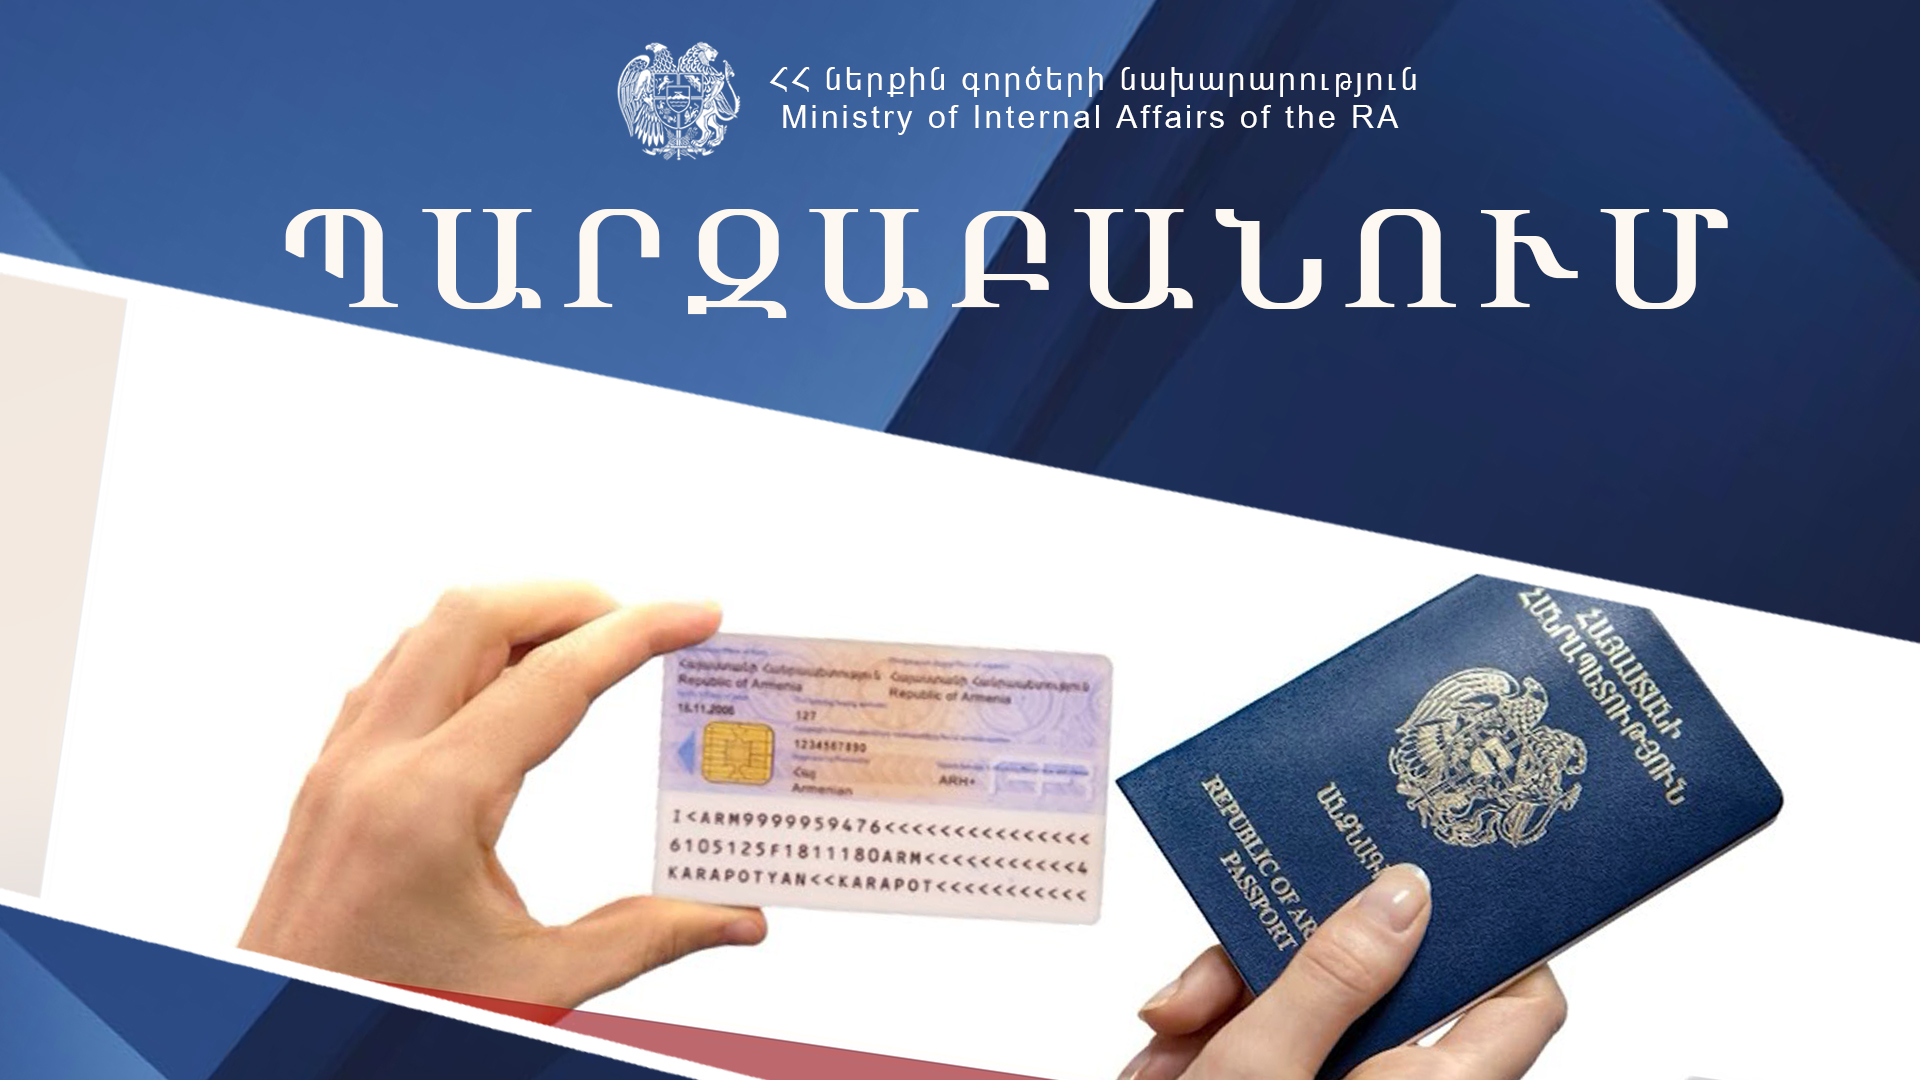 ՀՀ քաղաքացիները ստանում են նույնականացման քարտեր և անձնագրեր. պարզաբանում